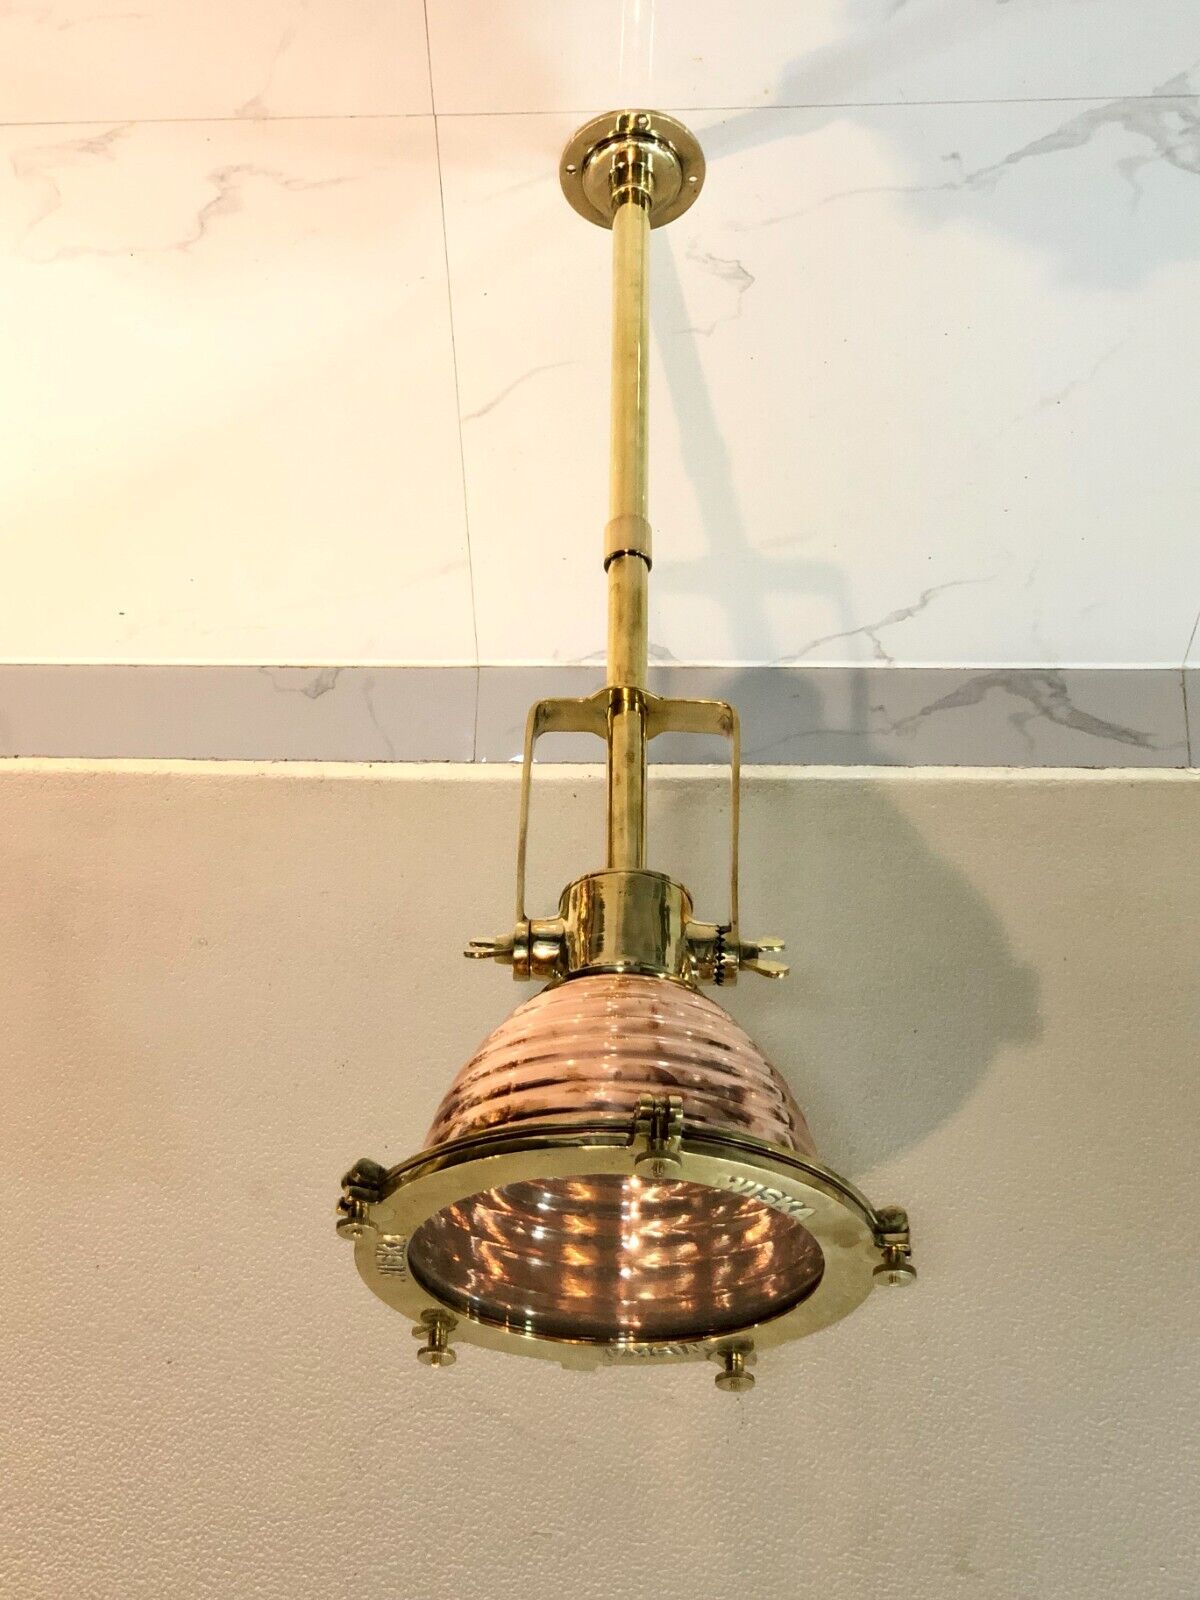 New Antique Vintage Style Brass & Copper Long Ceiling Mount Retro Pendant Light